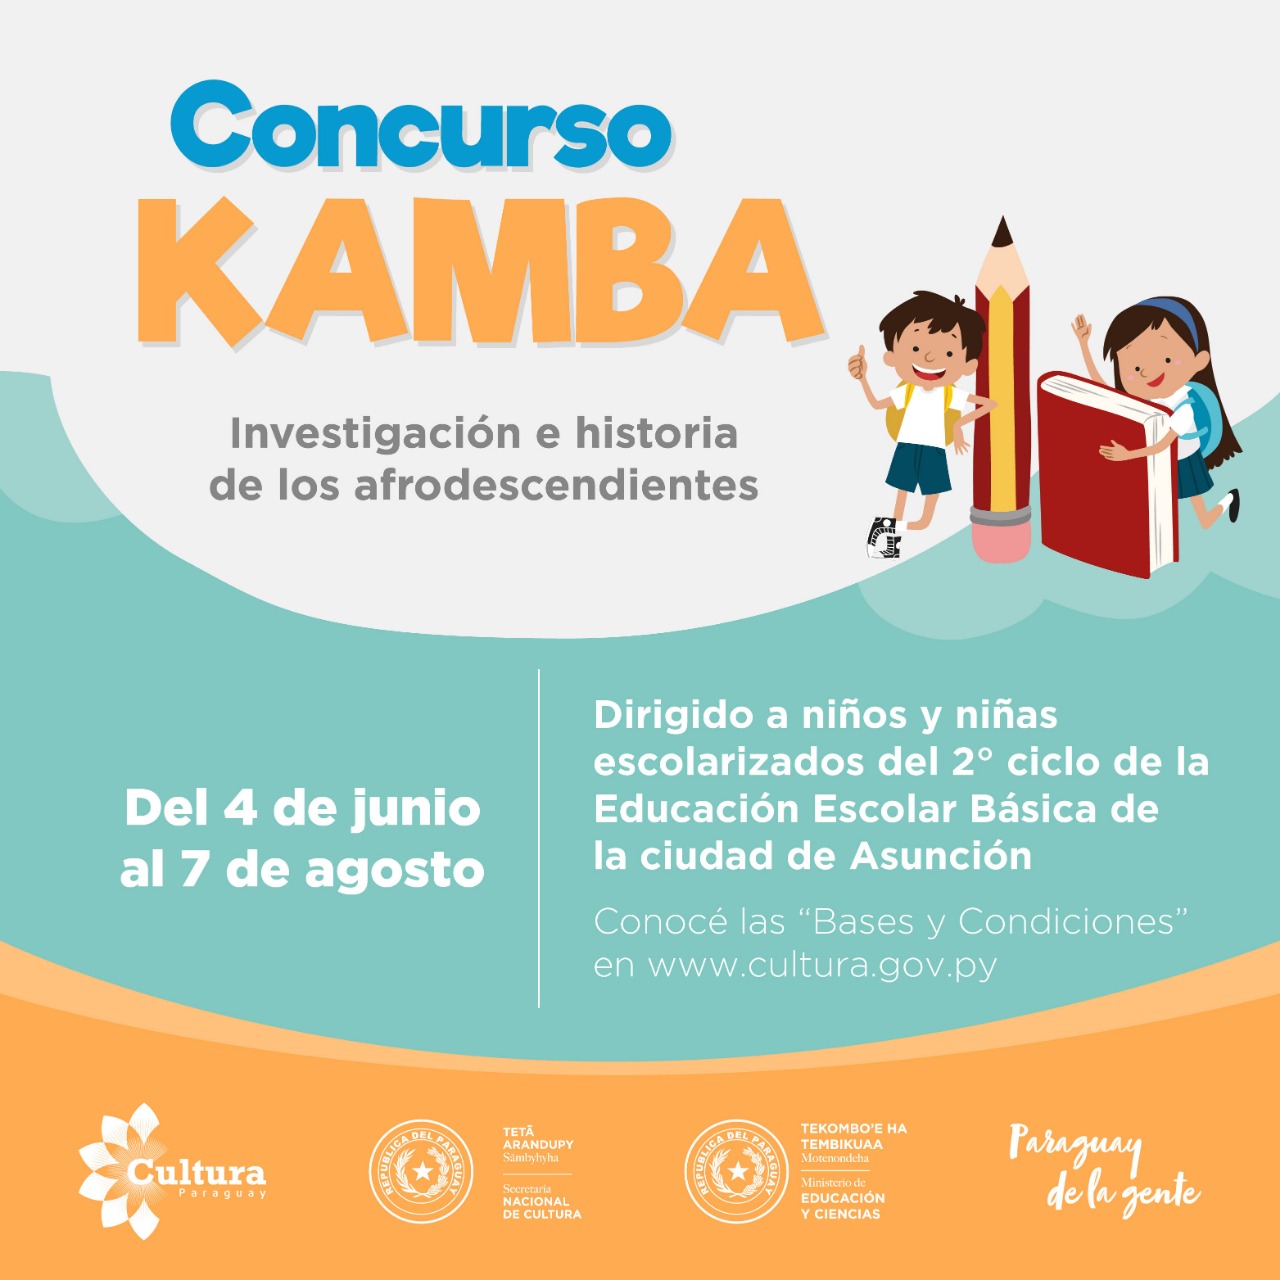 Cultura recibió 172 trabajos de estudiantes de la Escolar Básica para el Concurso “Kambá” imagen